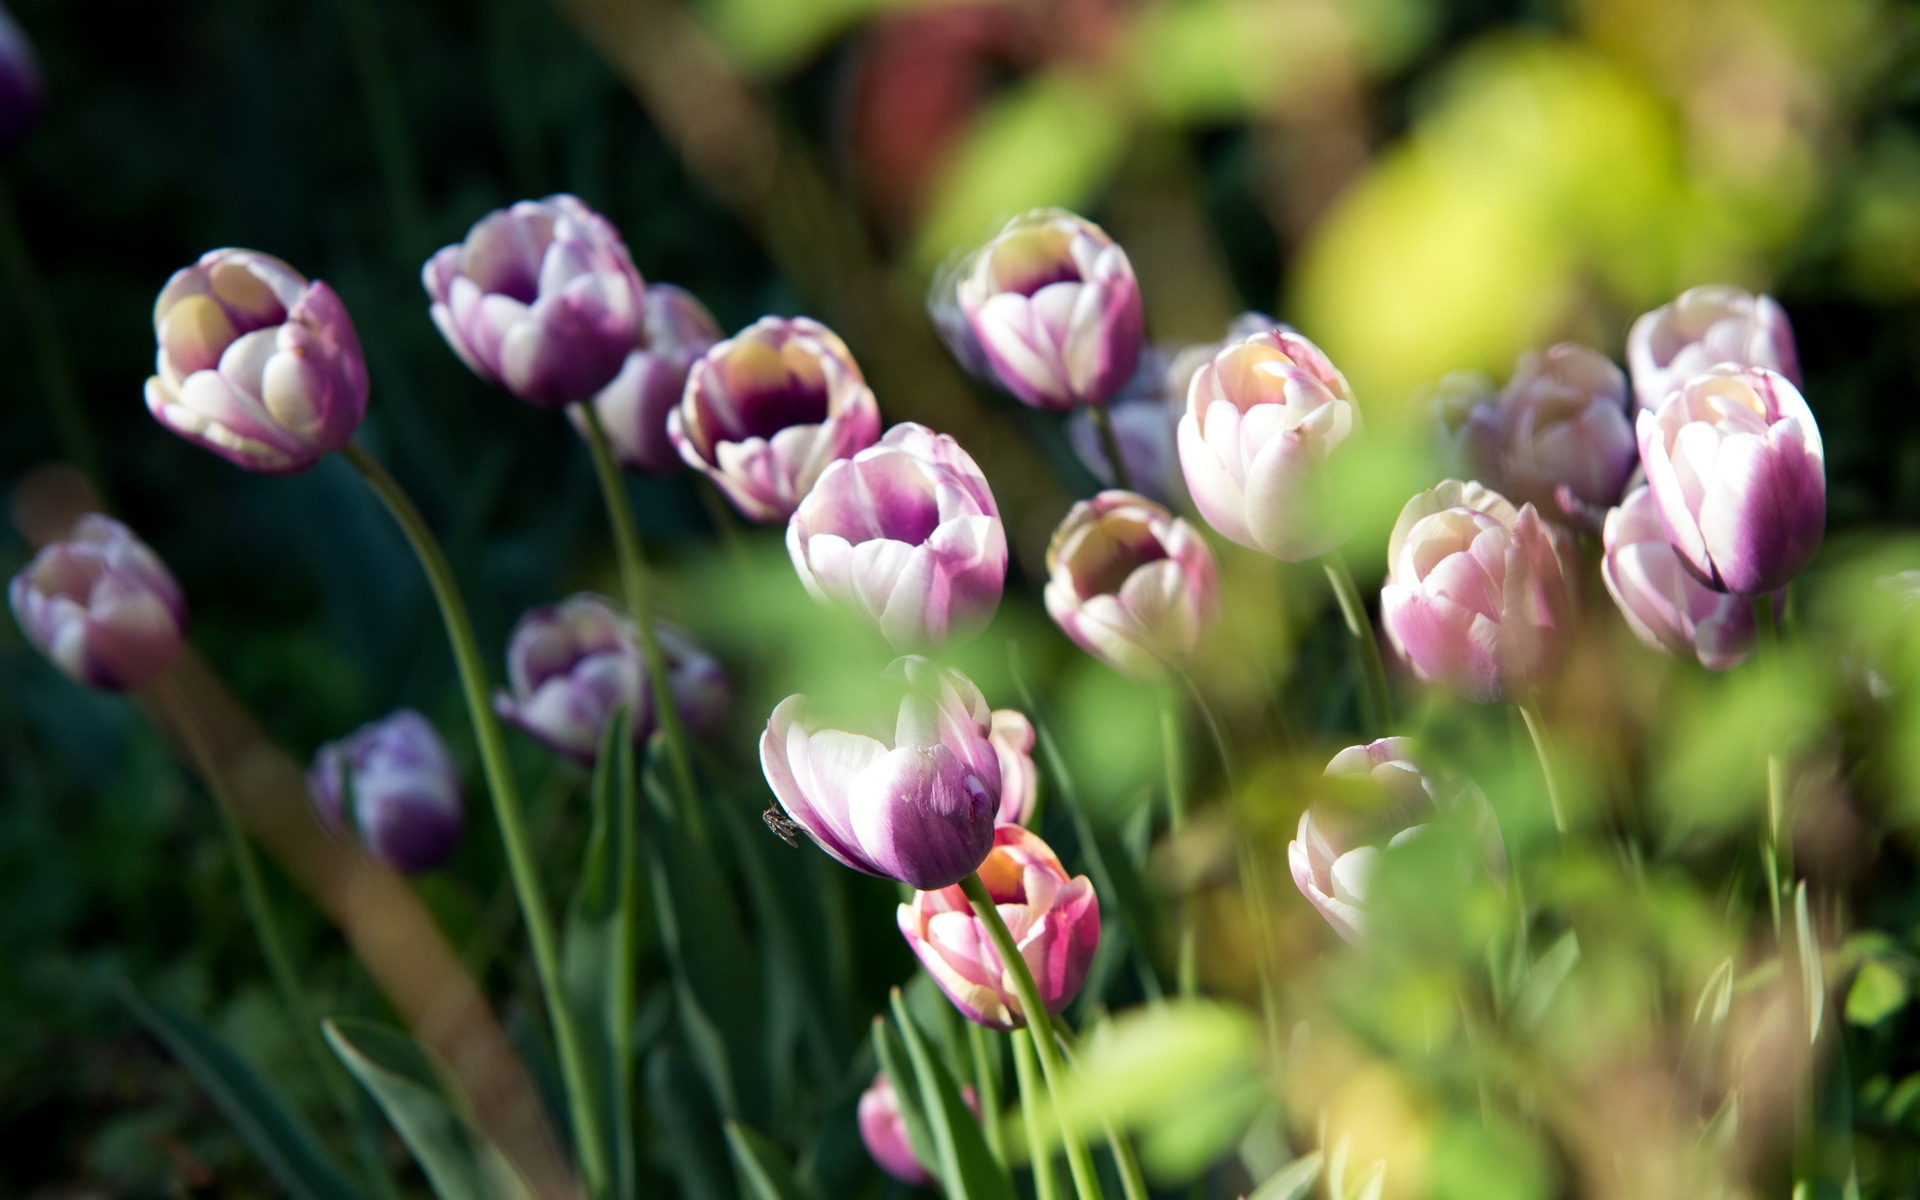 Descarga gratuita de fondo de pantalla para móvil de Tulipán, Macrofotografía, Flores, Naturaleza, Flor, Tierra/naturaleza.